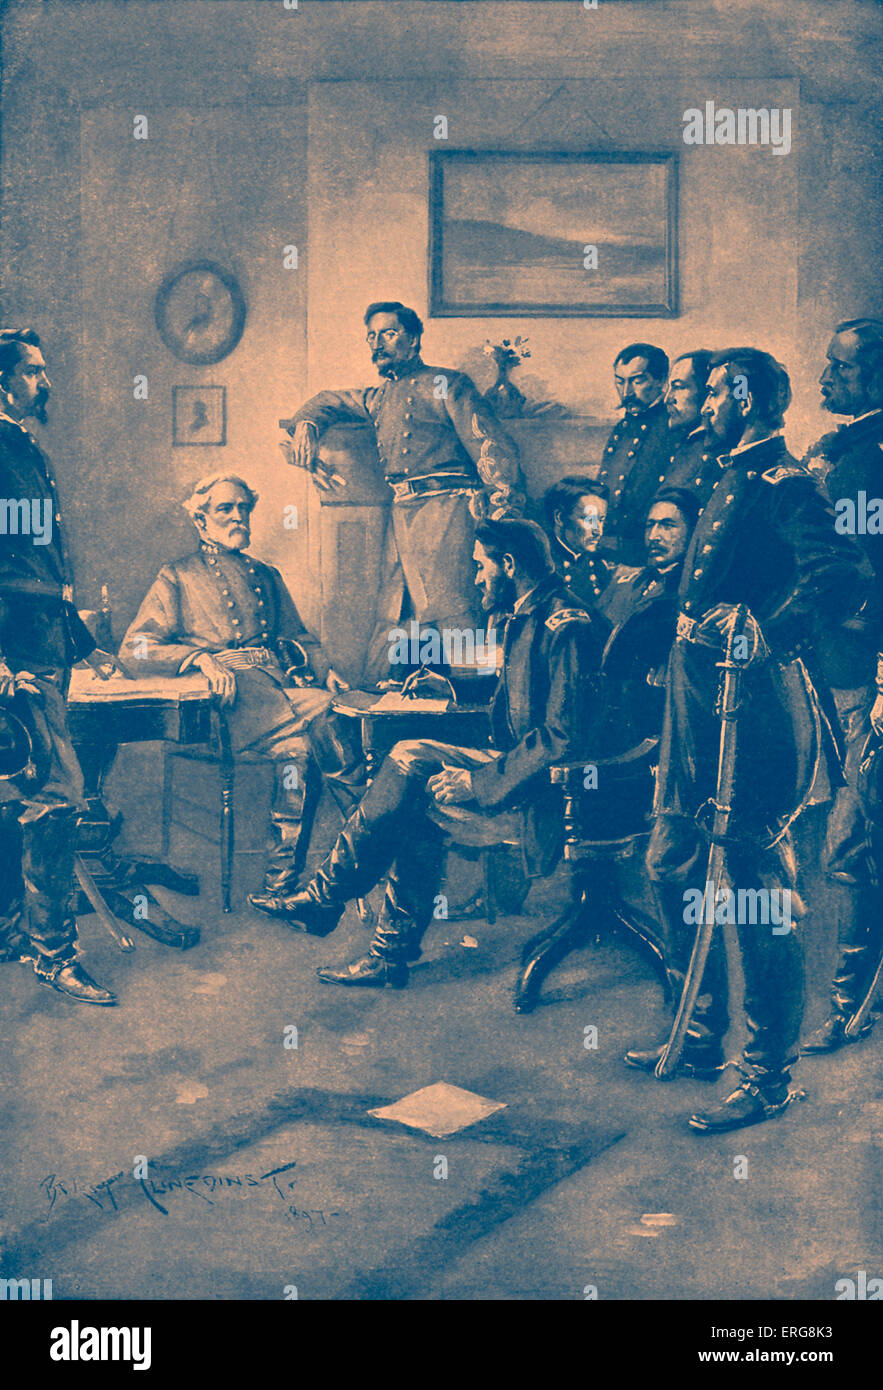 La guerra civile americana - Surrender at Appomattox Court House, 9 aprile 1865. Esercito confederato della Virginia del Nord comandante Robert Foto Stock